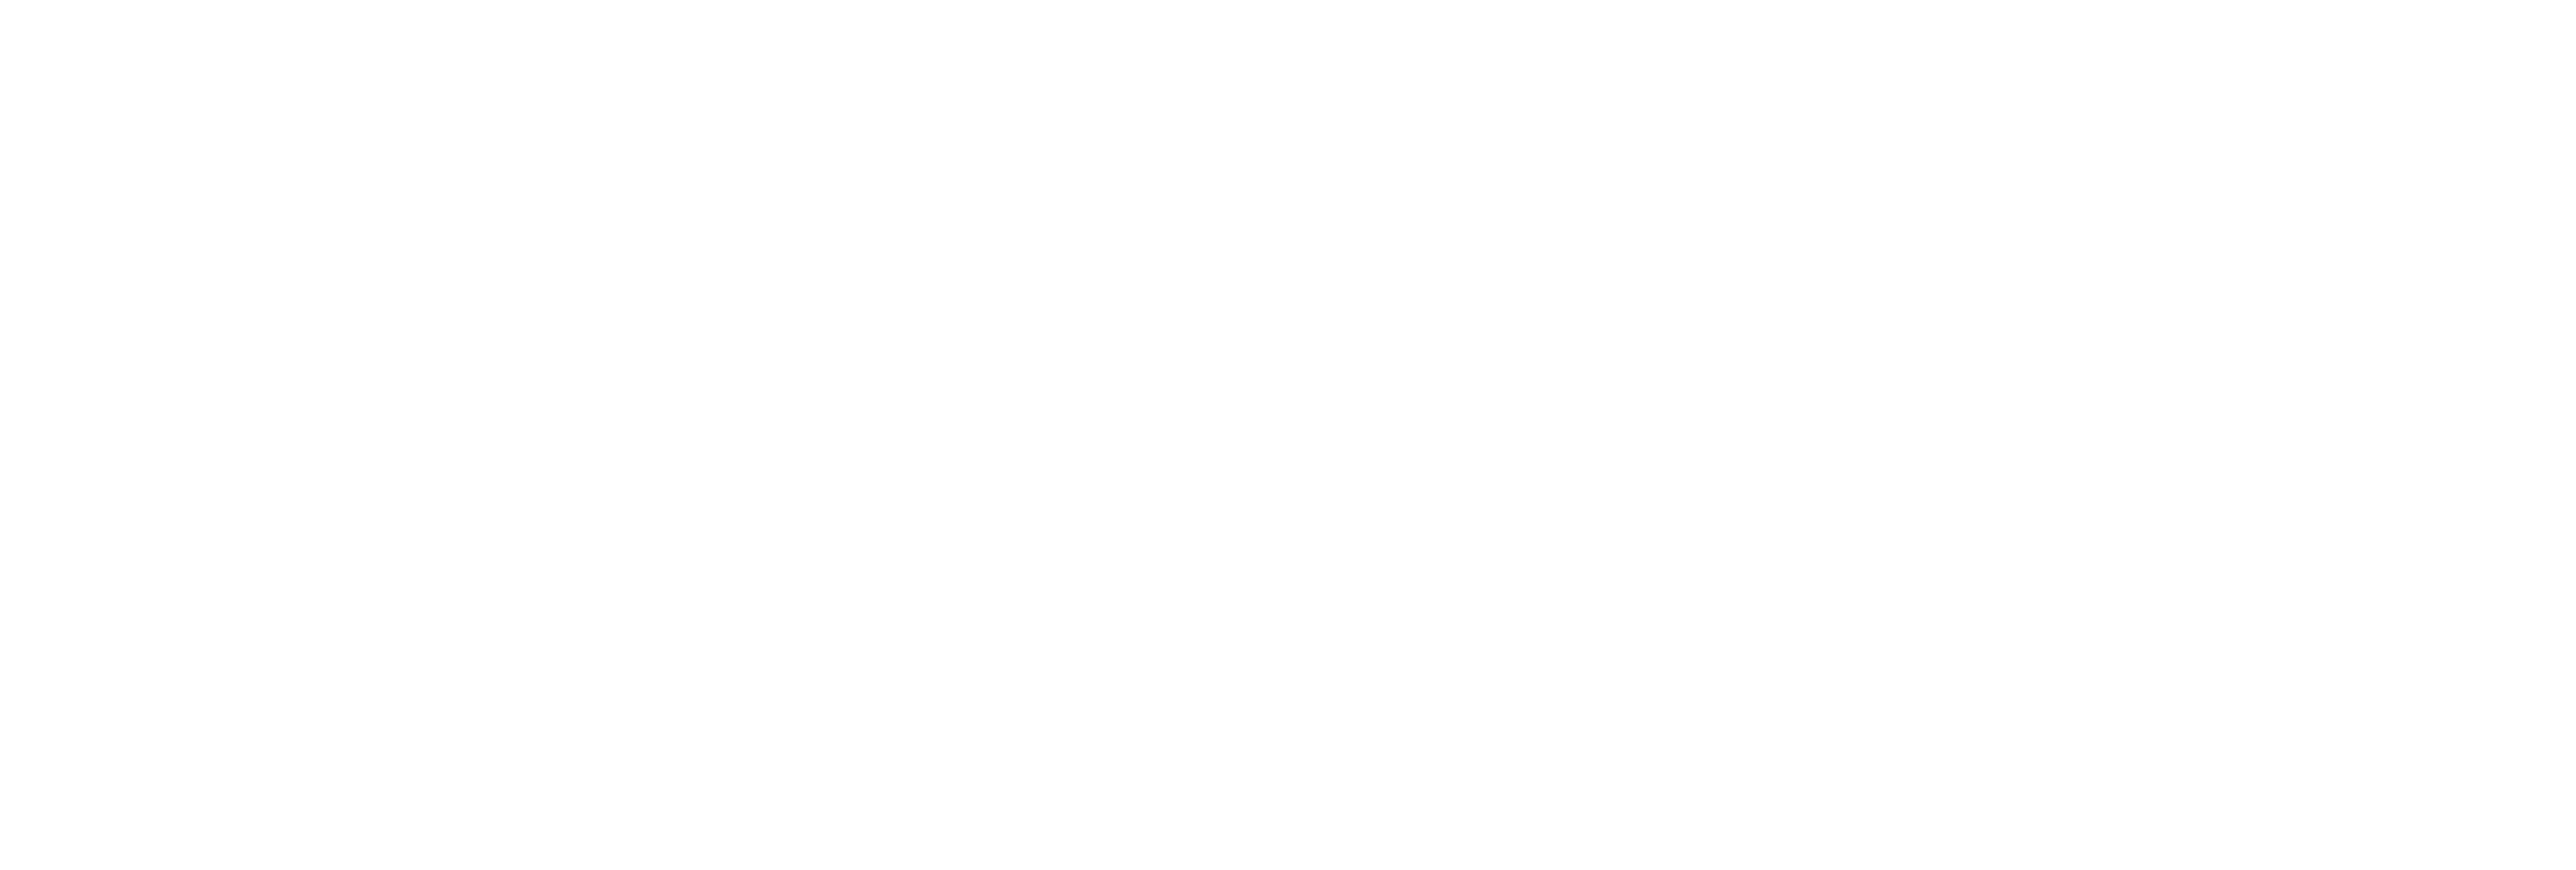 AniCura Centro Polispecialistico Chiesanuova logo